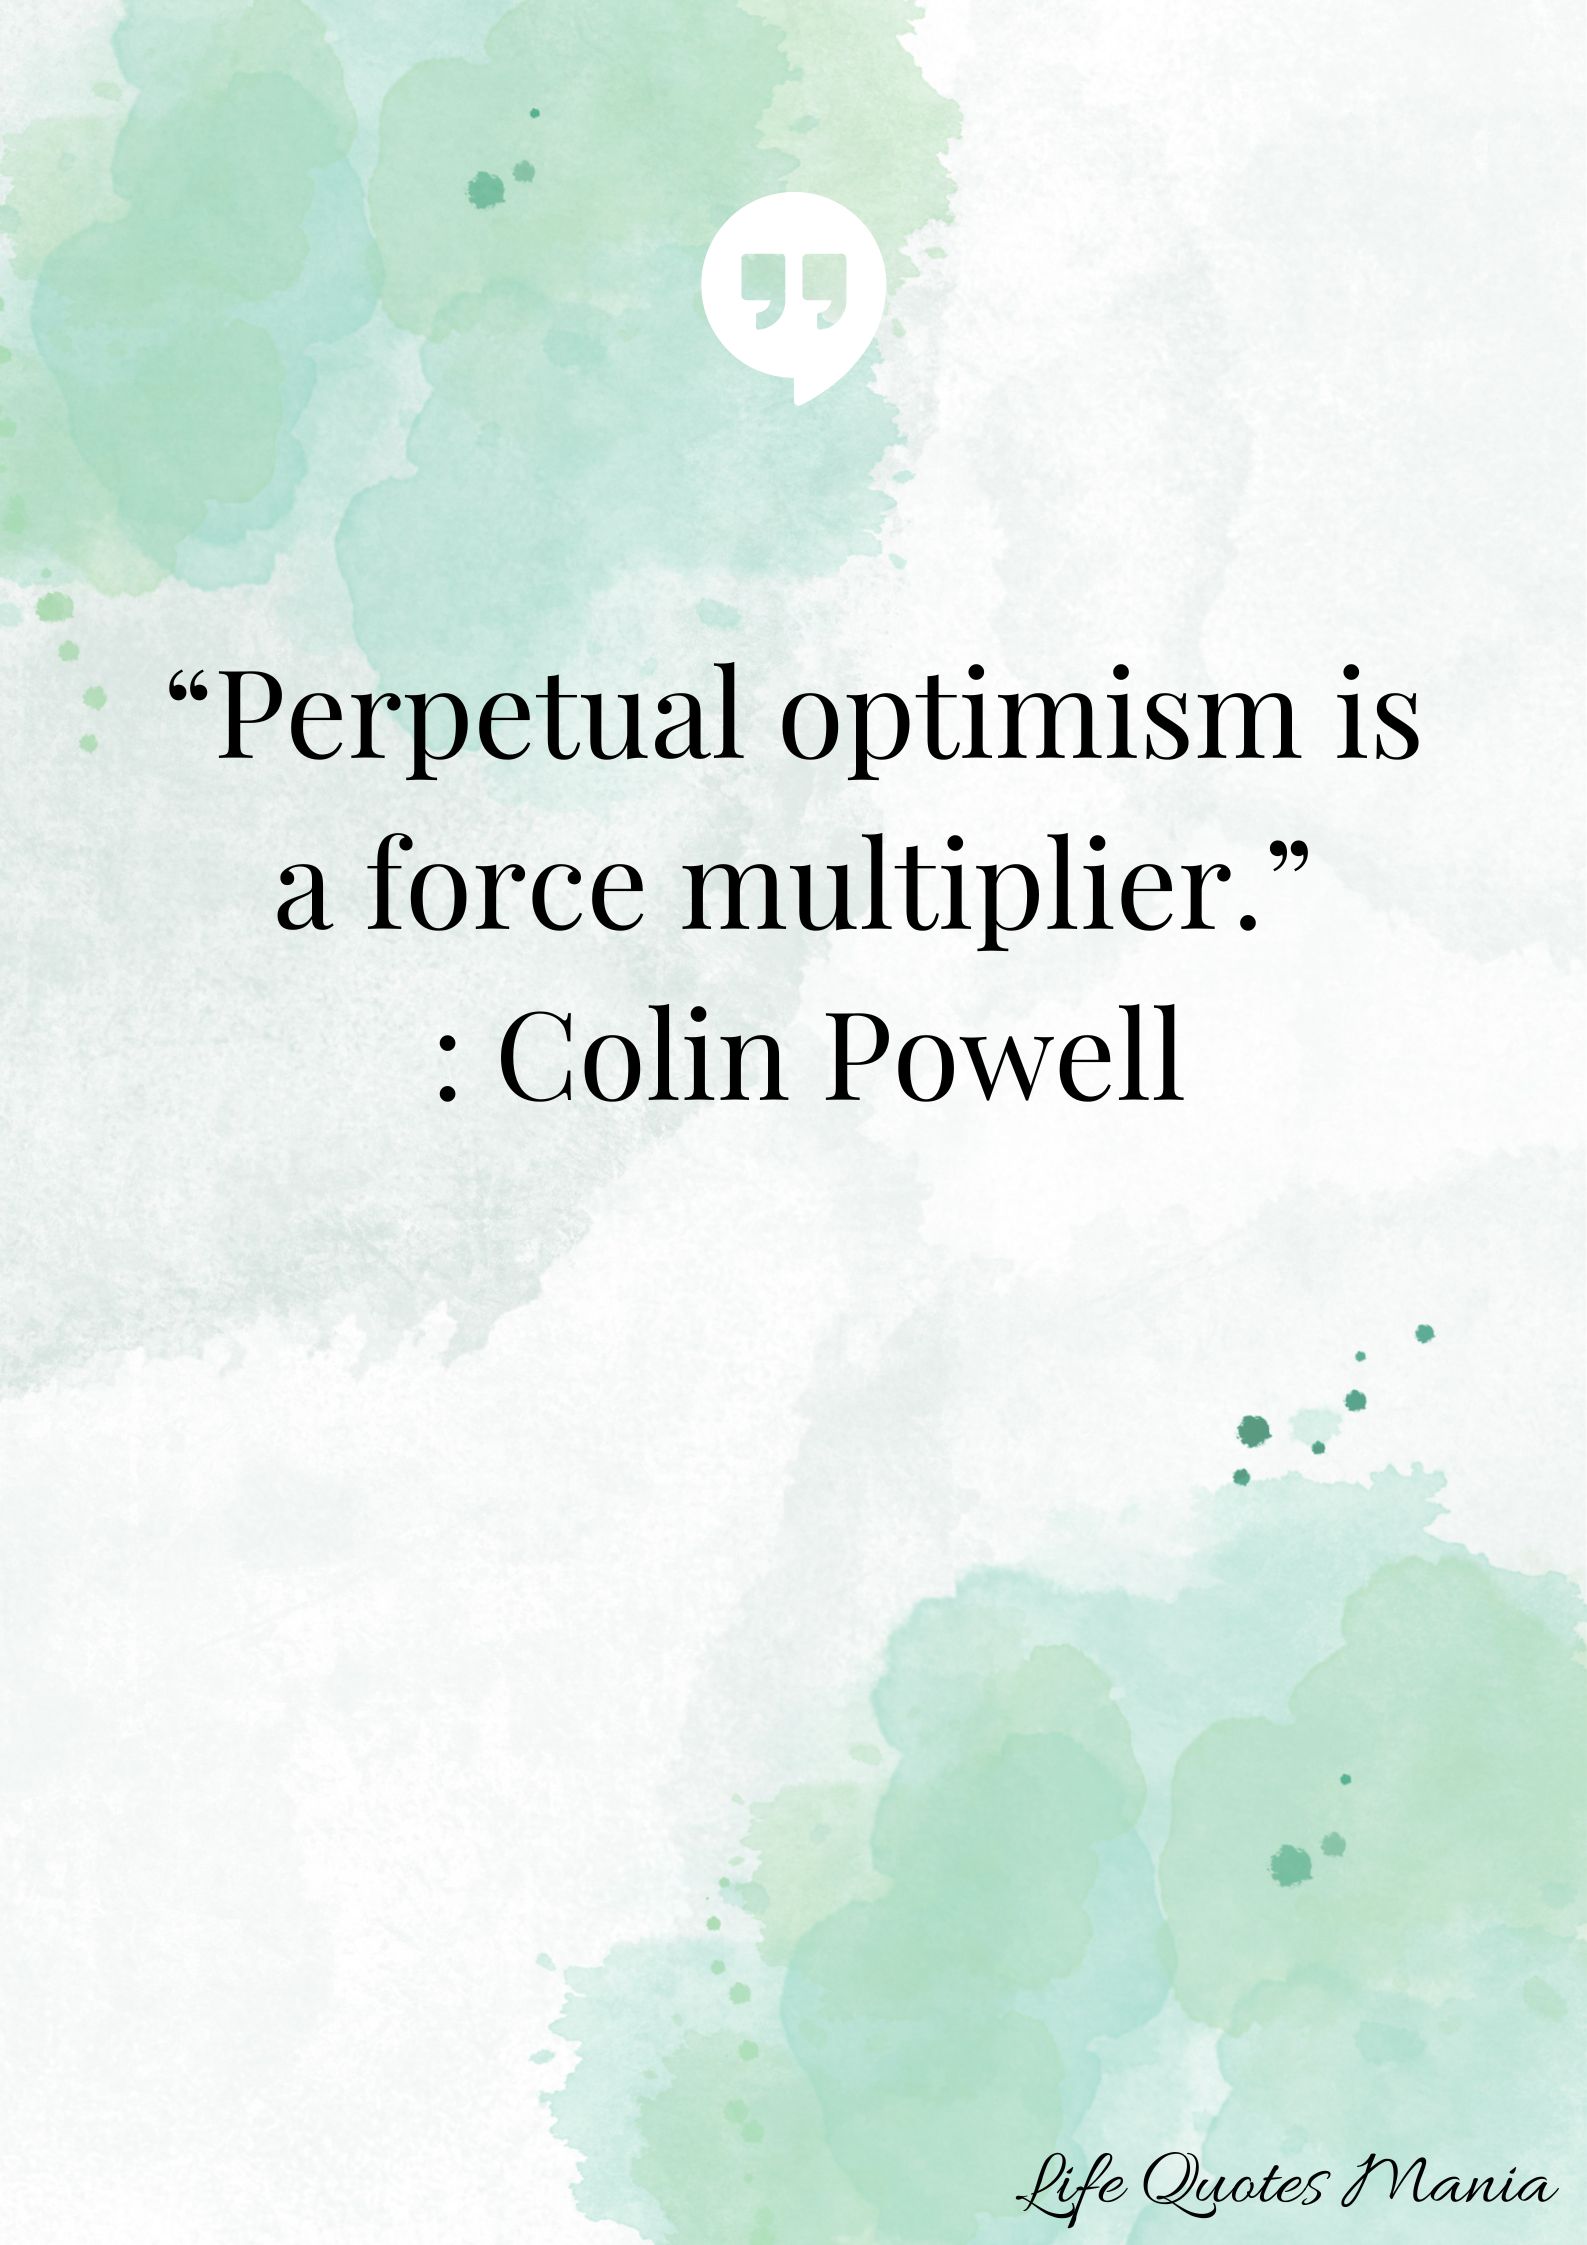 Attitude Quote - Colin Powell